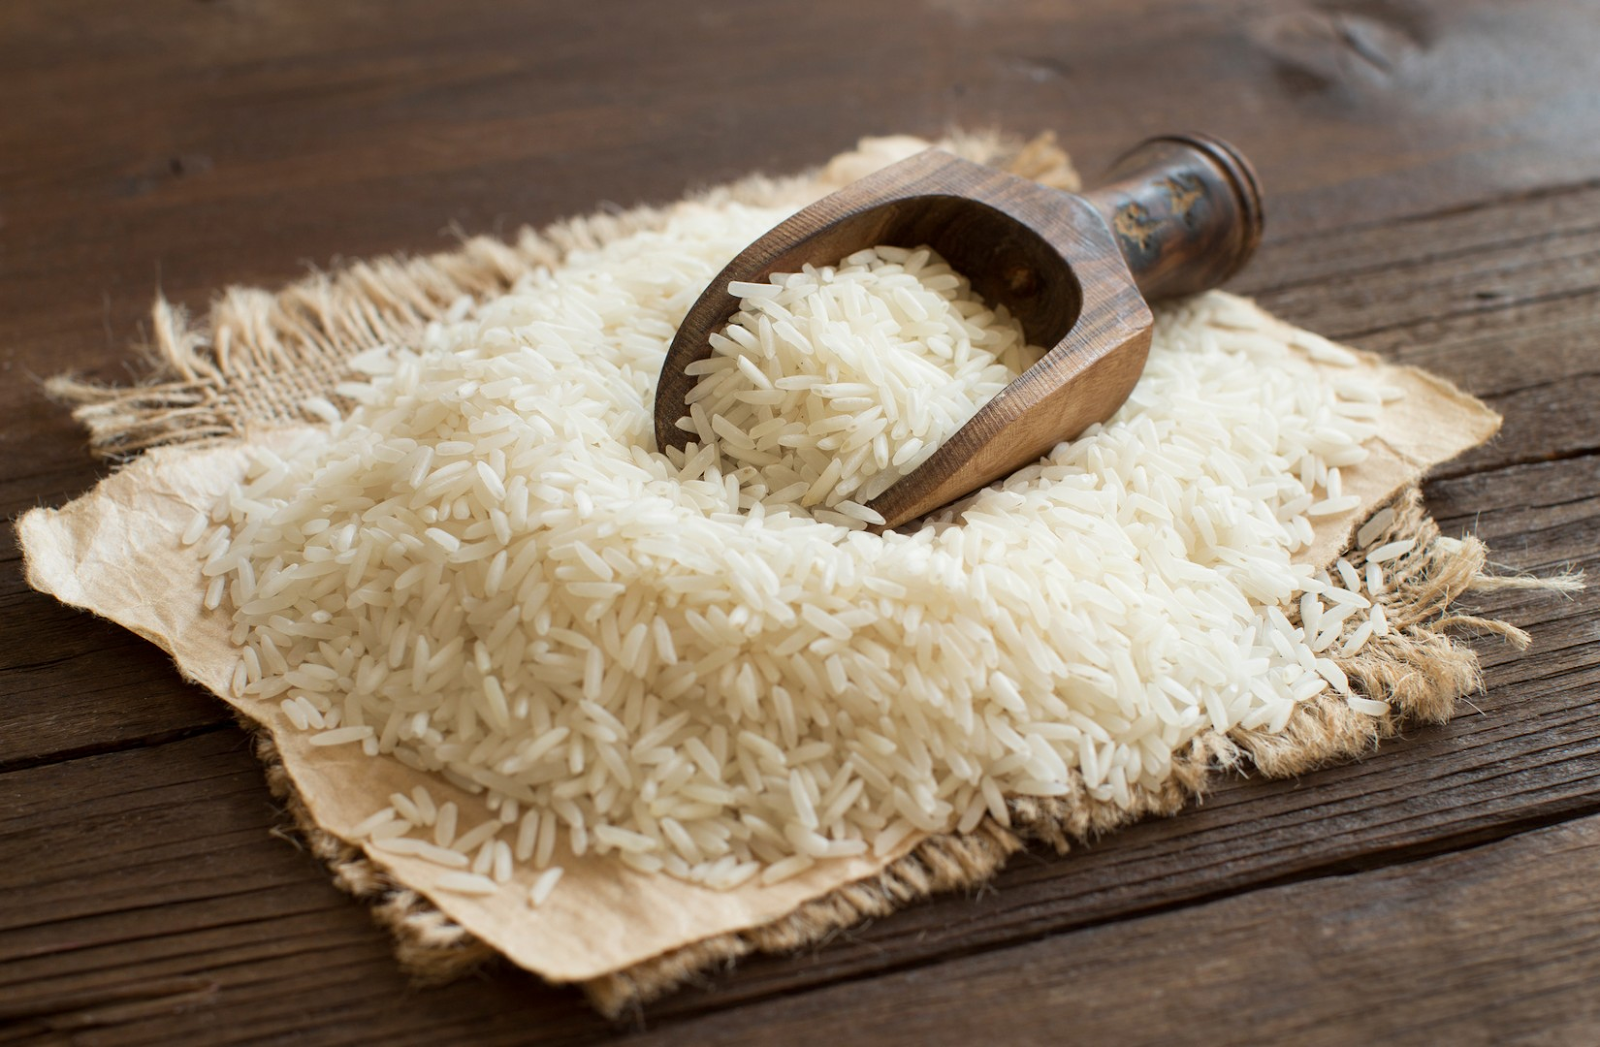 Chọn mua gạo ở cửa hàng uy tín để đảm bảo vệ sinh và tránh nhiễm tạp chất gây hại cho da 